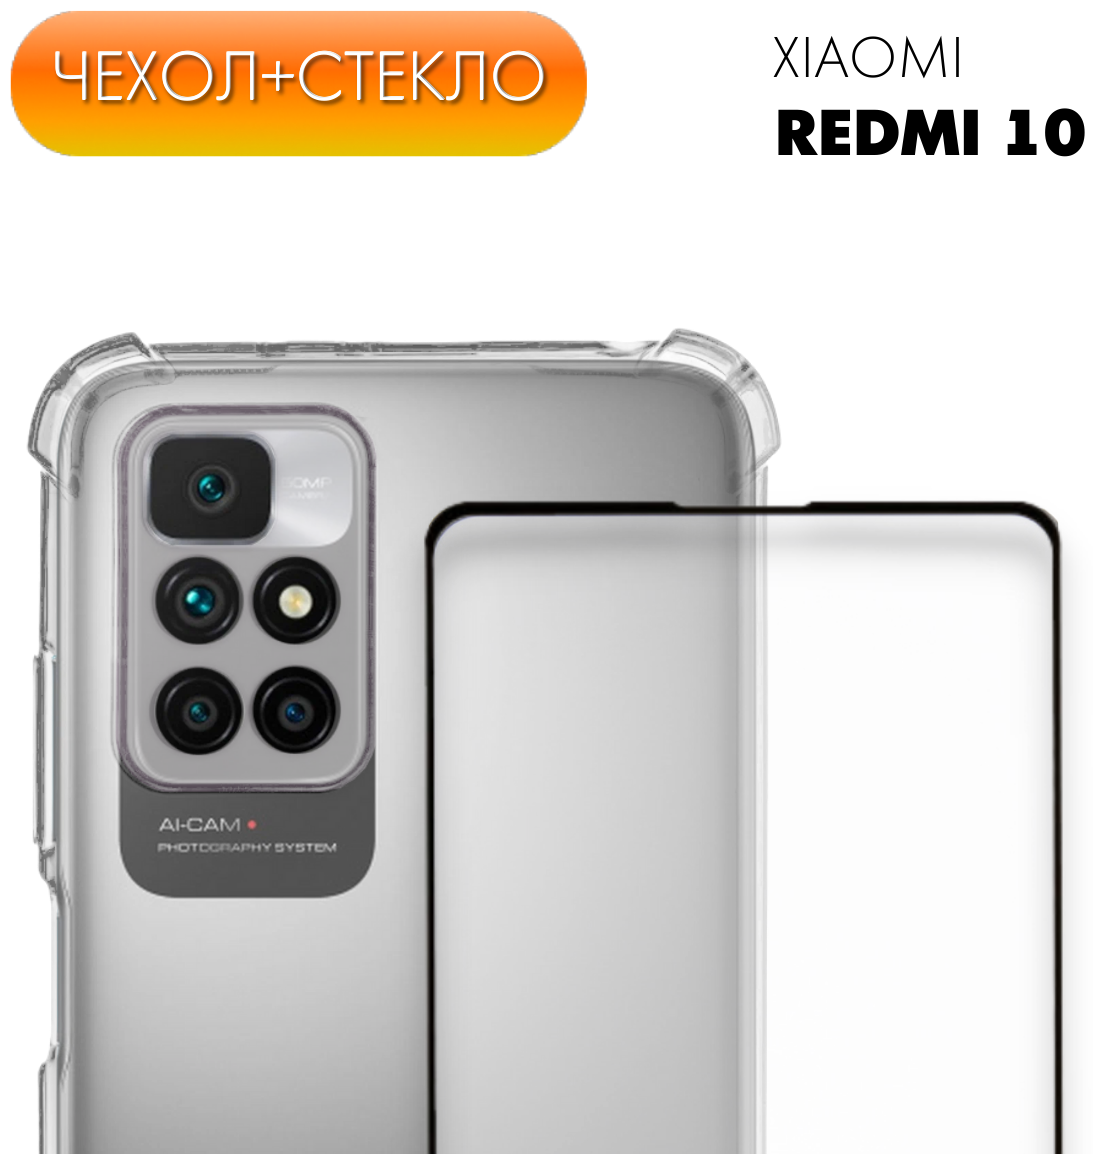 Комплект 2 в 1: Чехол №03 + стекло для Xiaomi Redmi 10 / противоударный силиконовый прозрачный клип-кейс с защитой камеры и углов на Ксиоми Редми 10